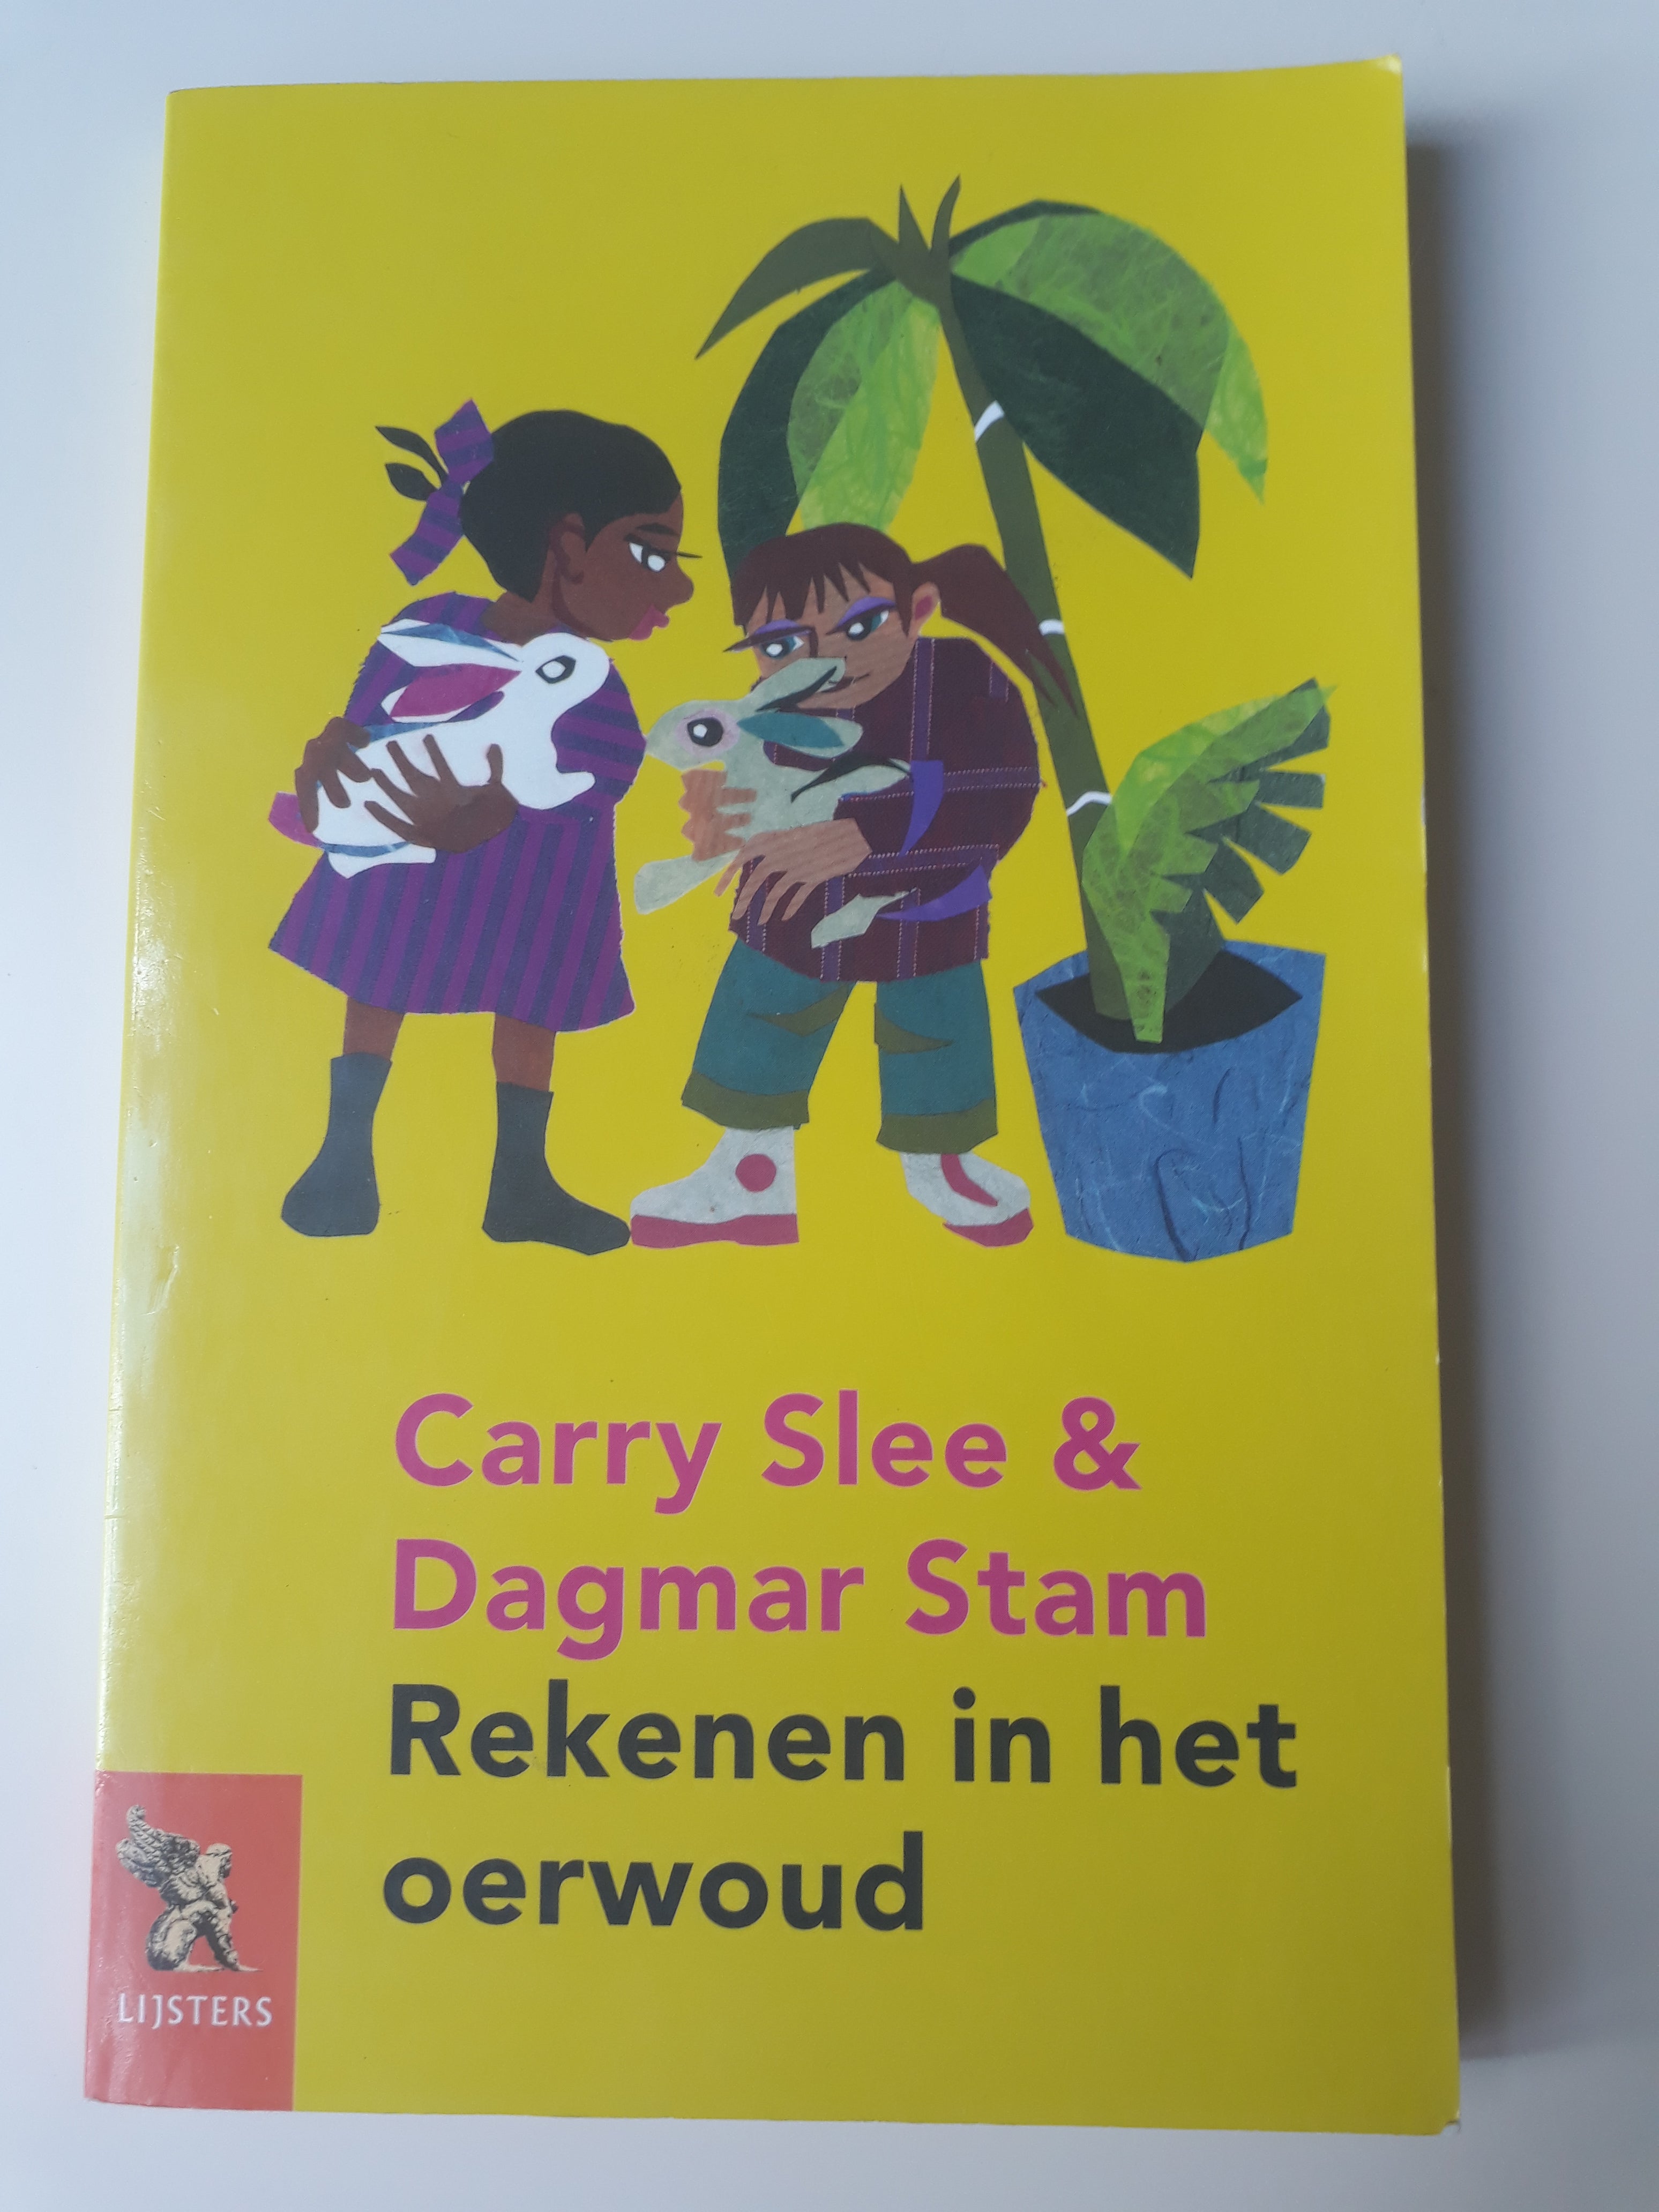 Rekenen in het oerwoud - Carry Slee & Dagmar Stam - 2dehands